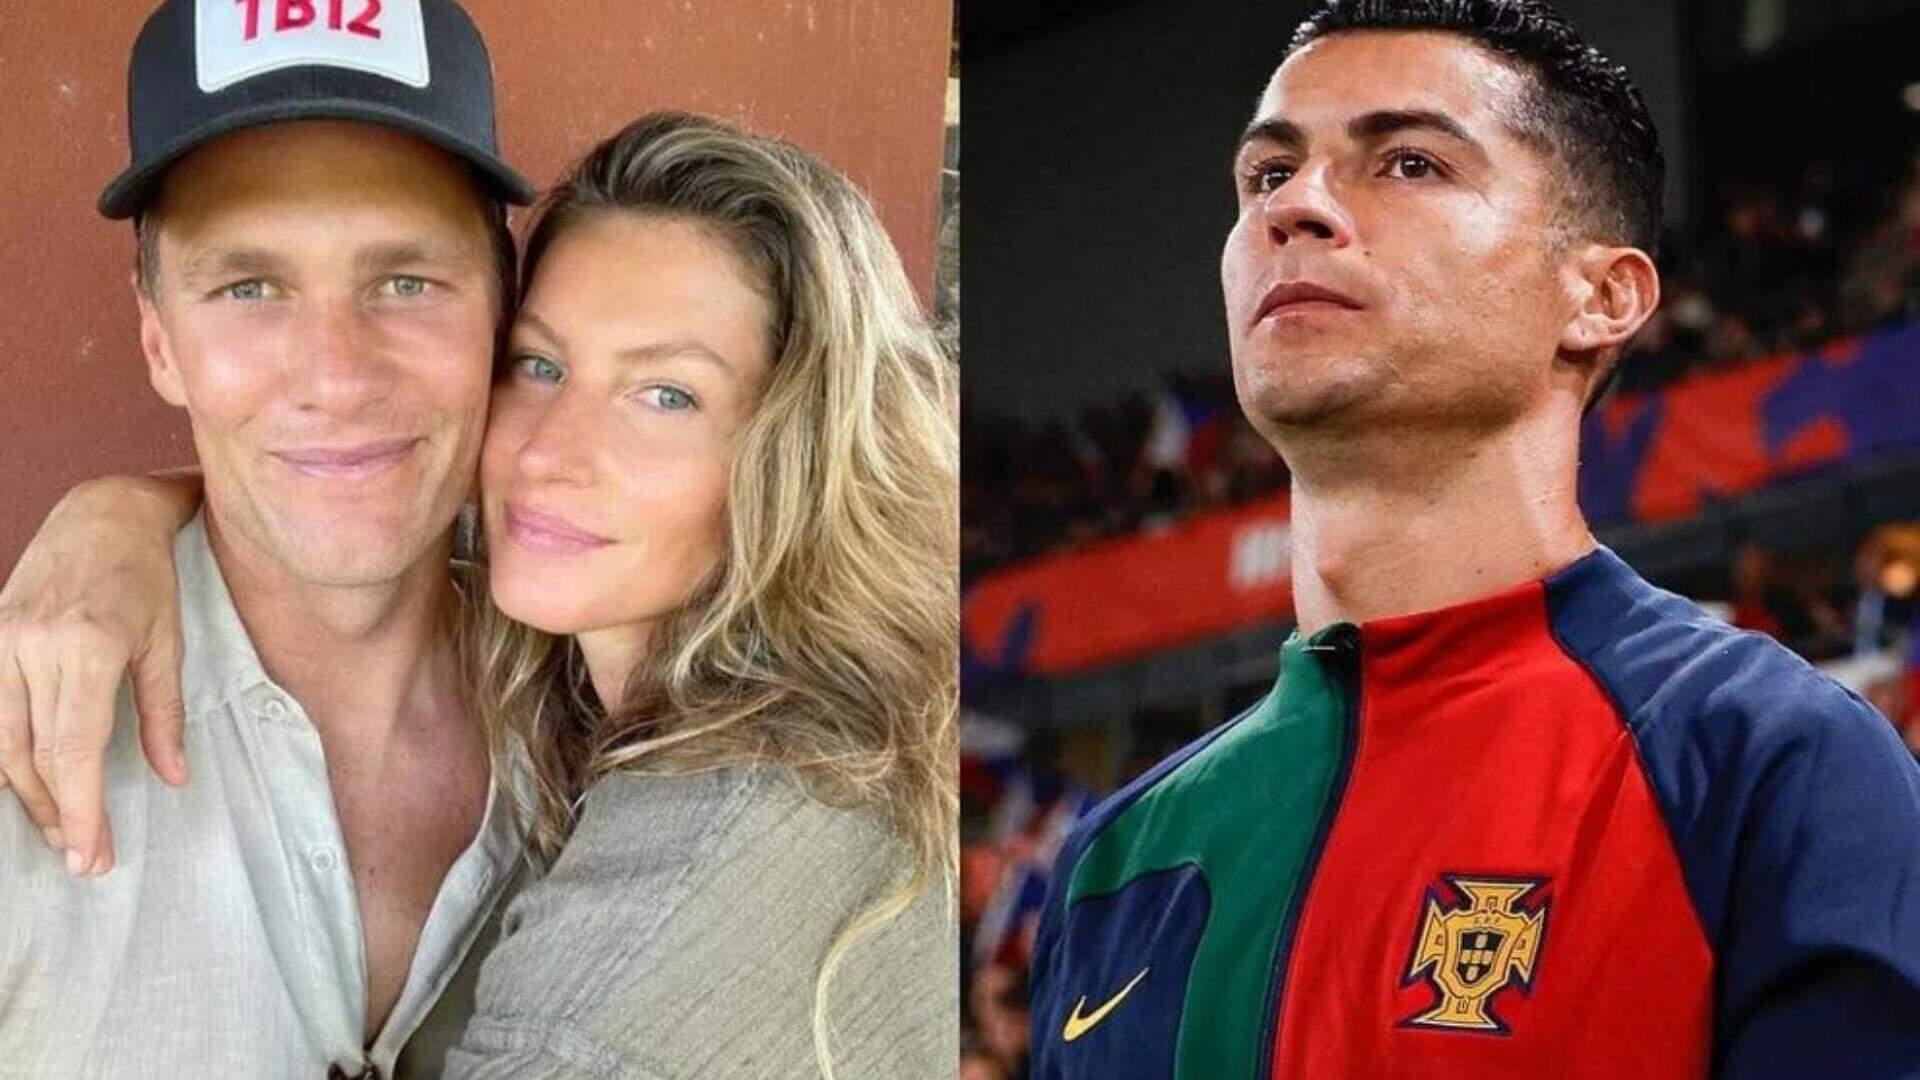 Envolvido? Segundo jornal, Cristiano Ronaldo é responsável pela separação de Gisele e Brady - Metropolitana FM